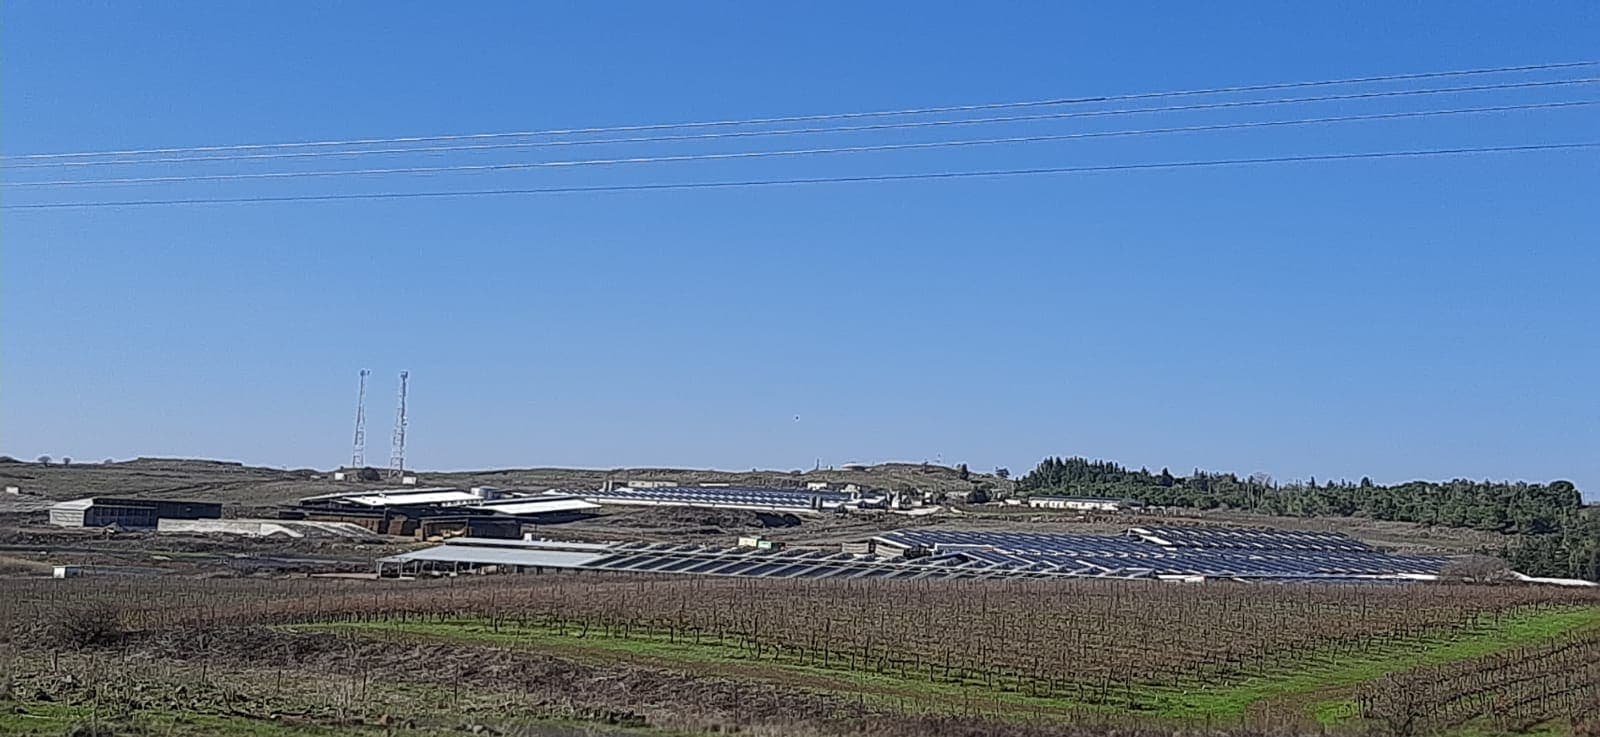 פאנלים סולאריים על מבנים חקלאיים בגולן. הממשלה הכריזה על שדה סולארי שיוקם על חשבון שטח פתוח בעמק הבכא (צילום: עומר שרביט)